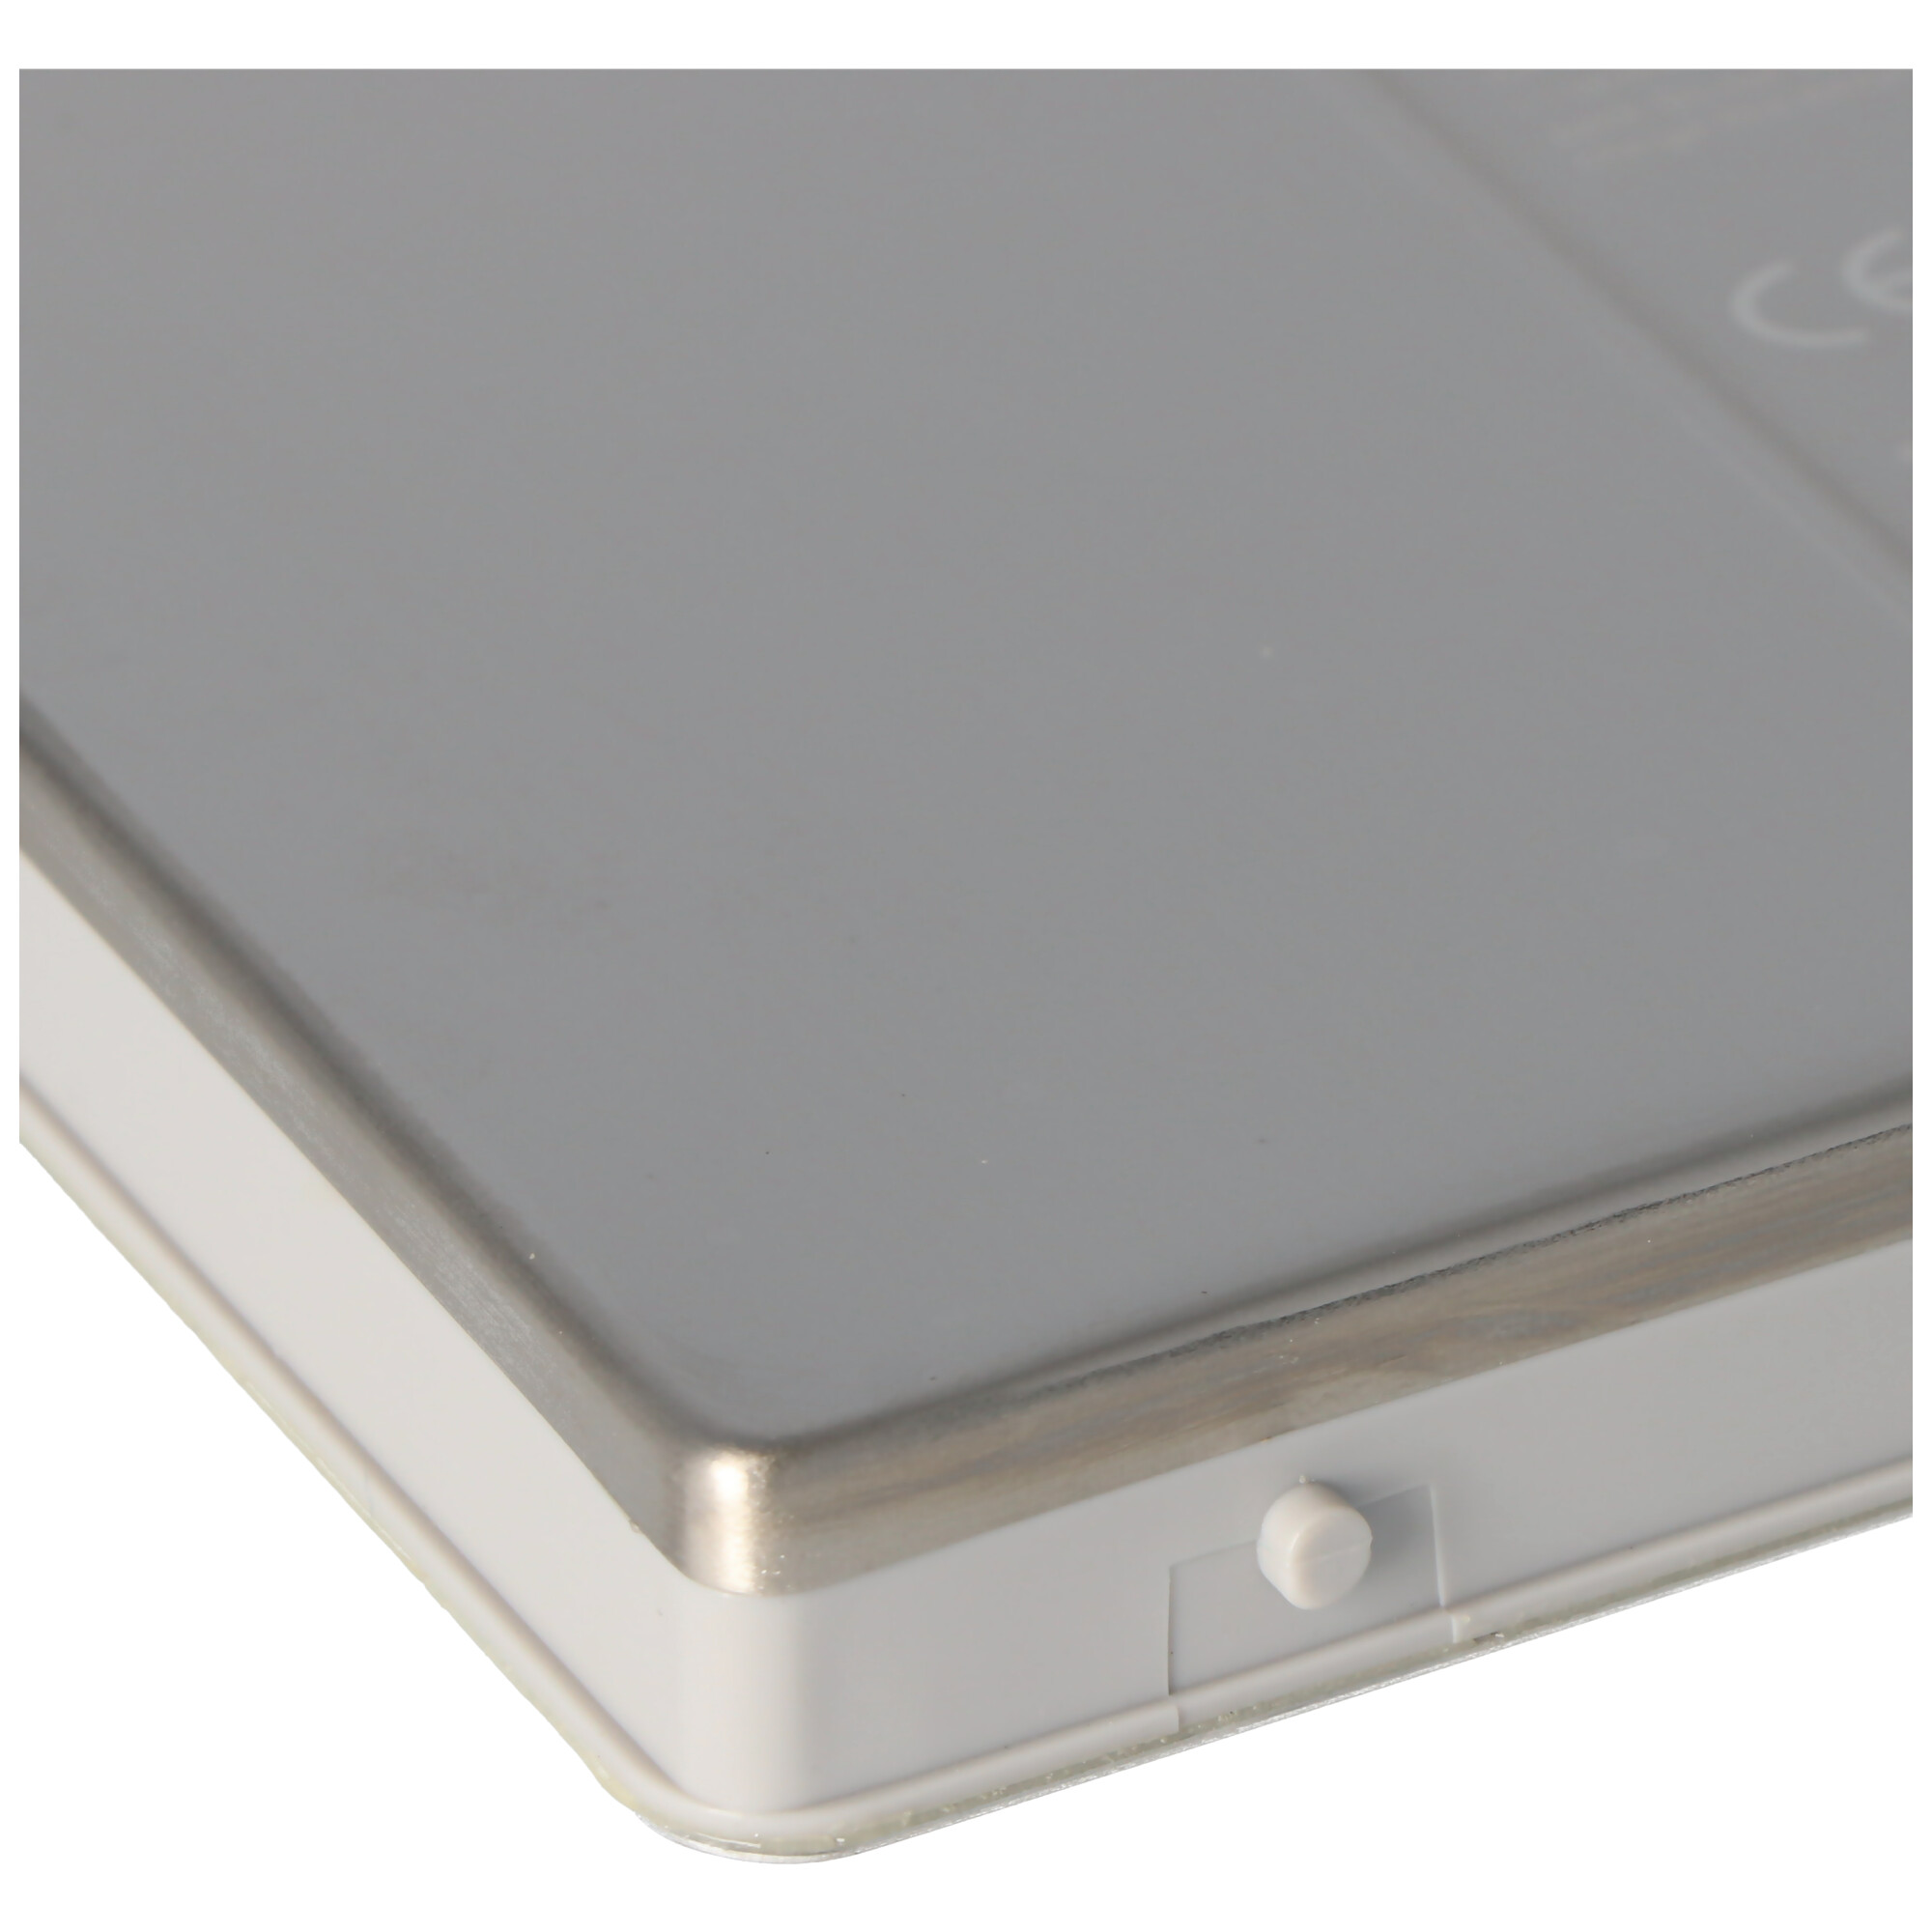 Akku passend für Apple Macbook Pro 17, A1189, MA458 kompatibler Hochleistungs-Akku